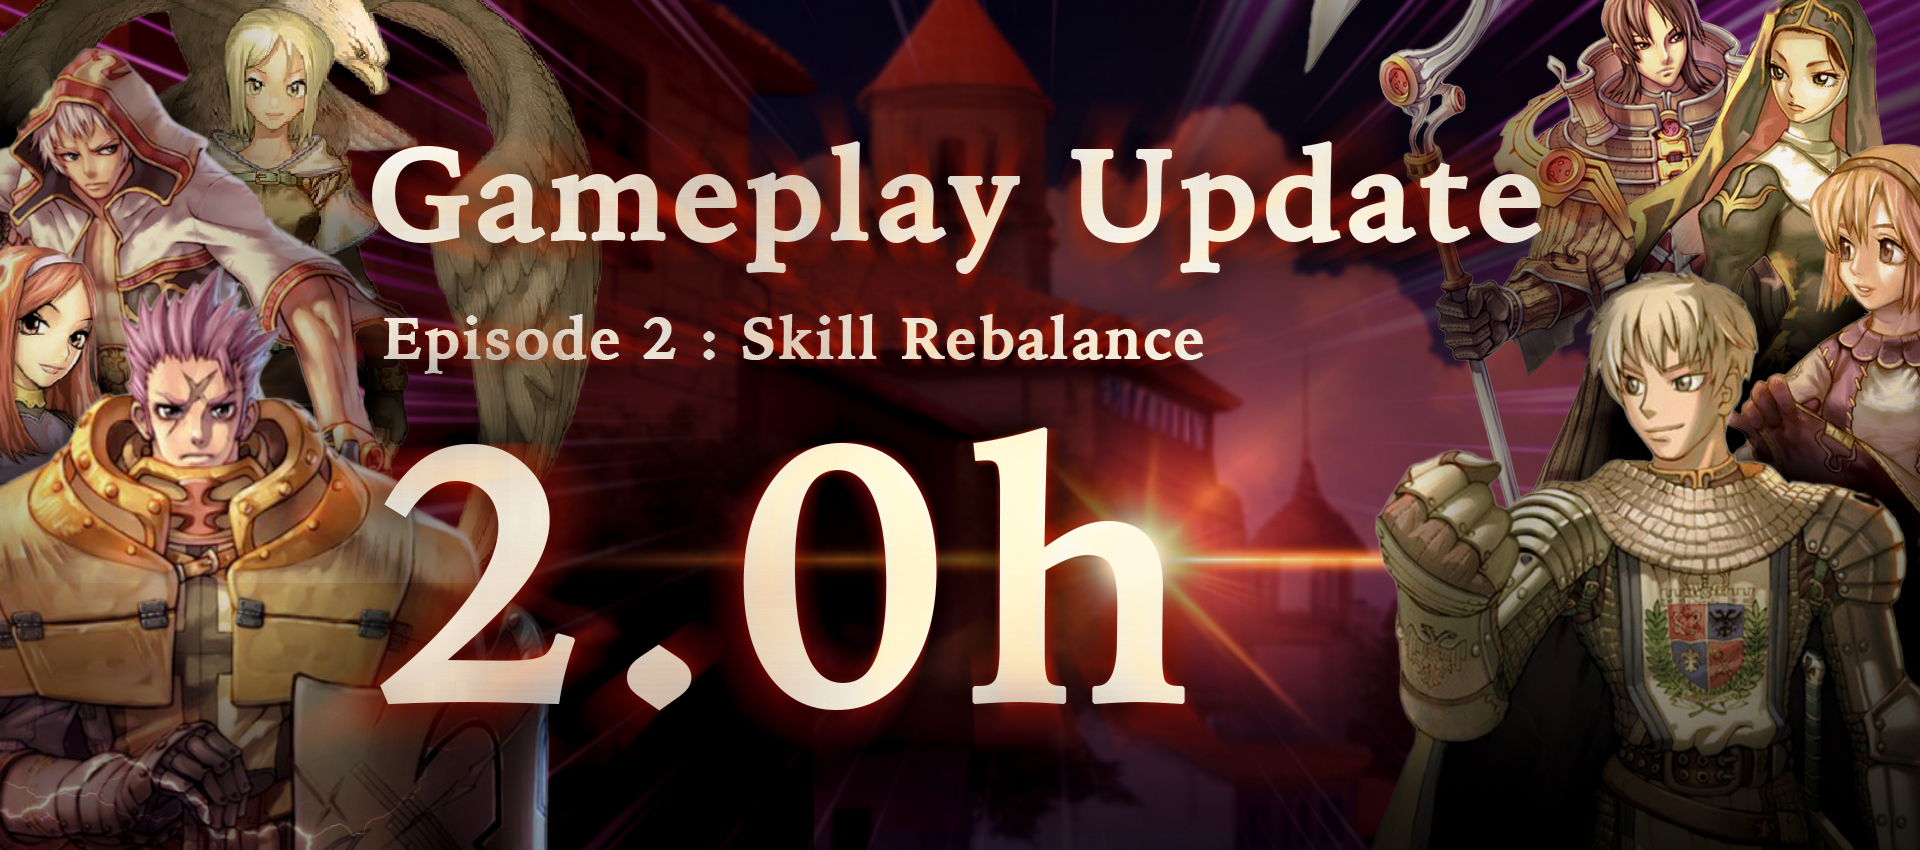 Gameplay Update 2.0h : Rebalance